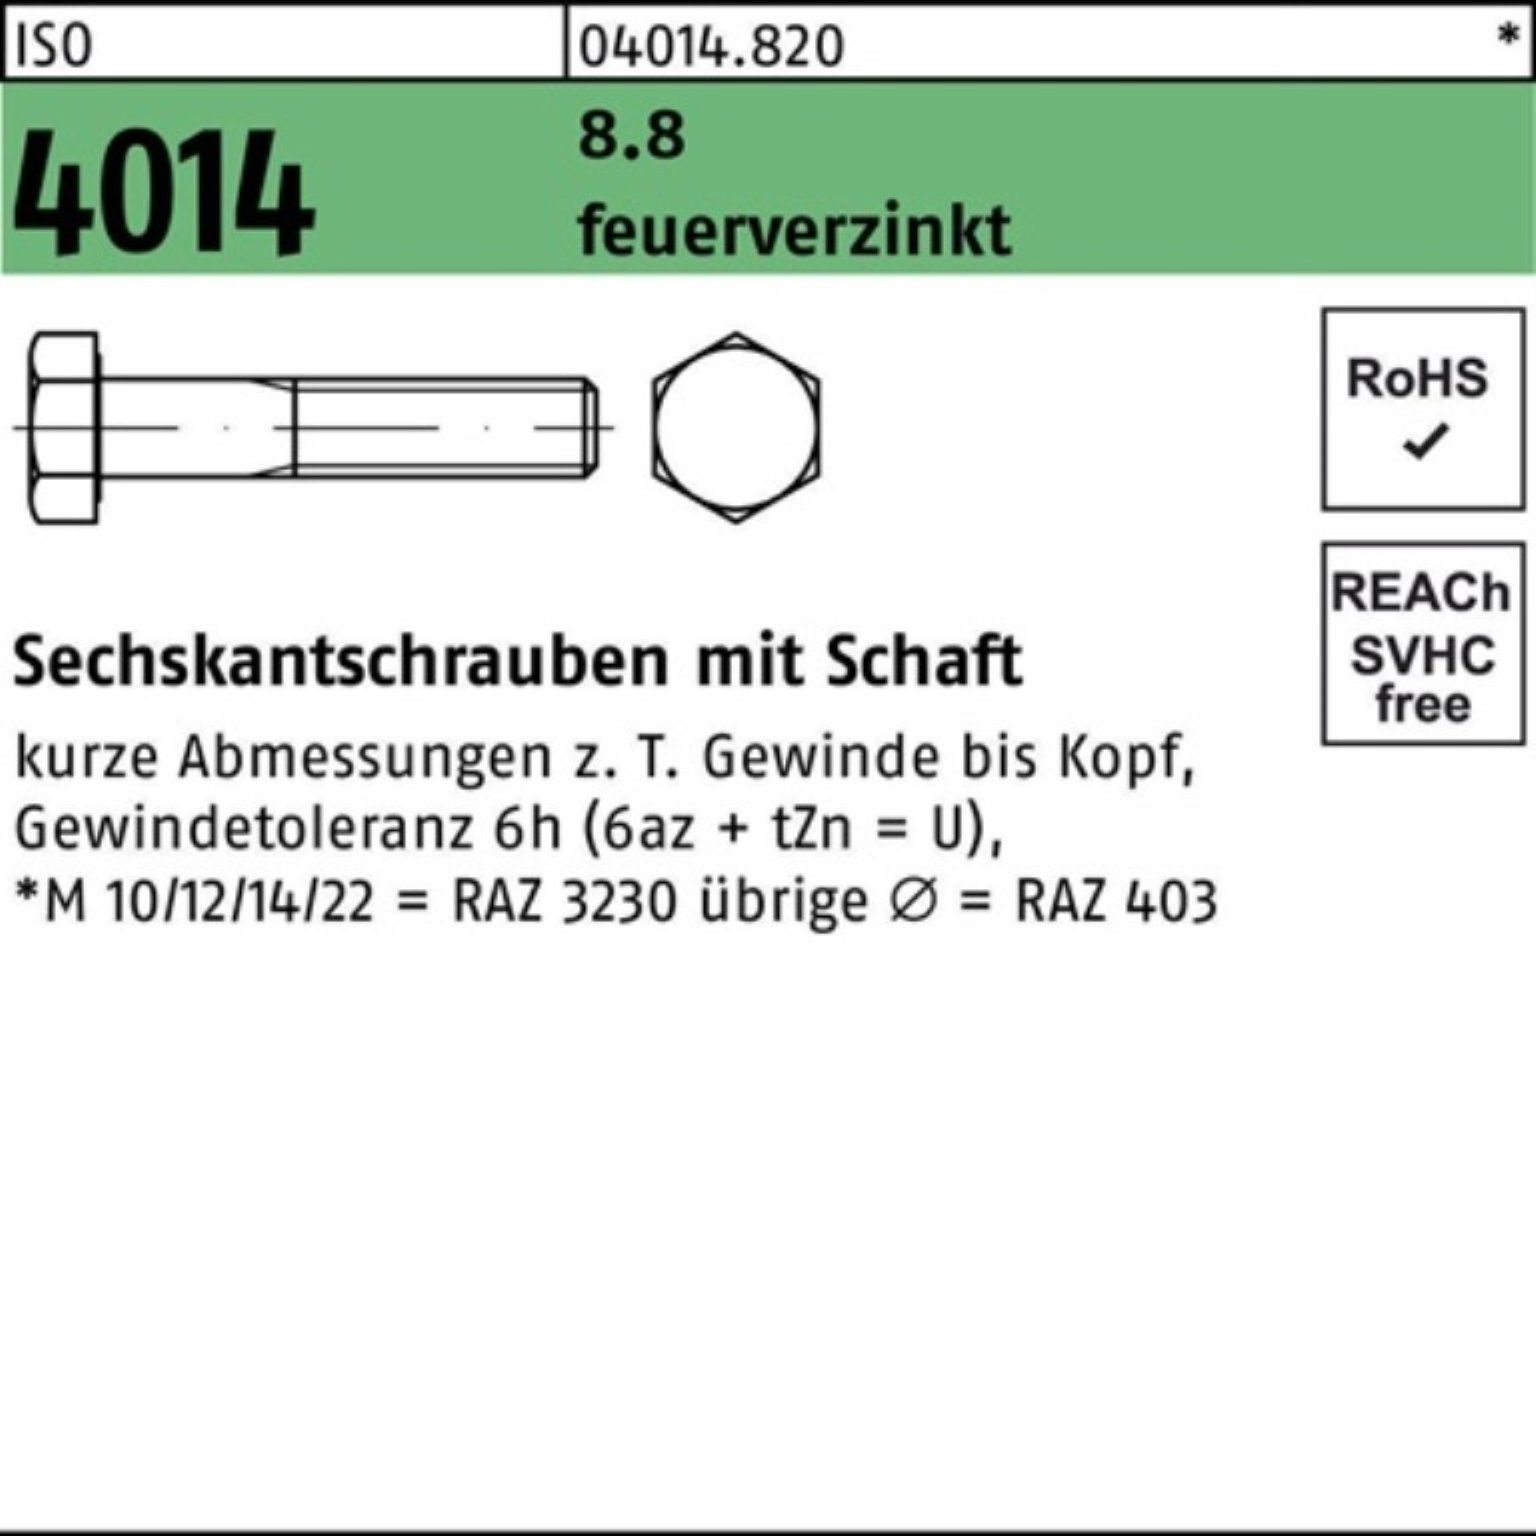 Bufab Sechskantschraube 100er Pack Sechskantschraube ISO 4014 Schaft M20x 100 8.8 feuerverz. 2